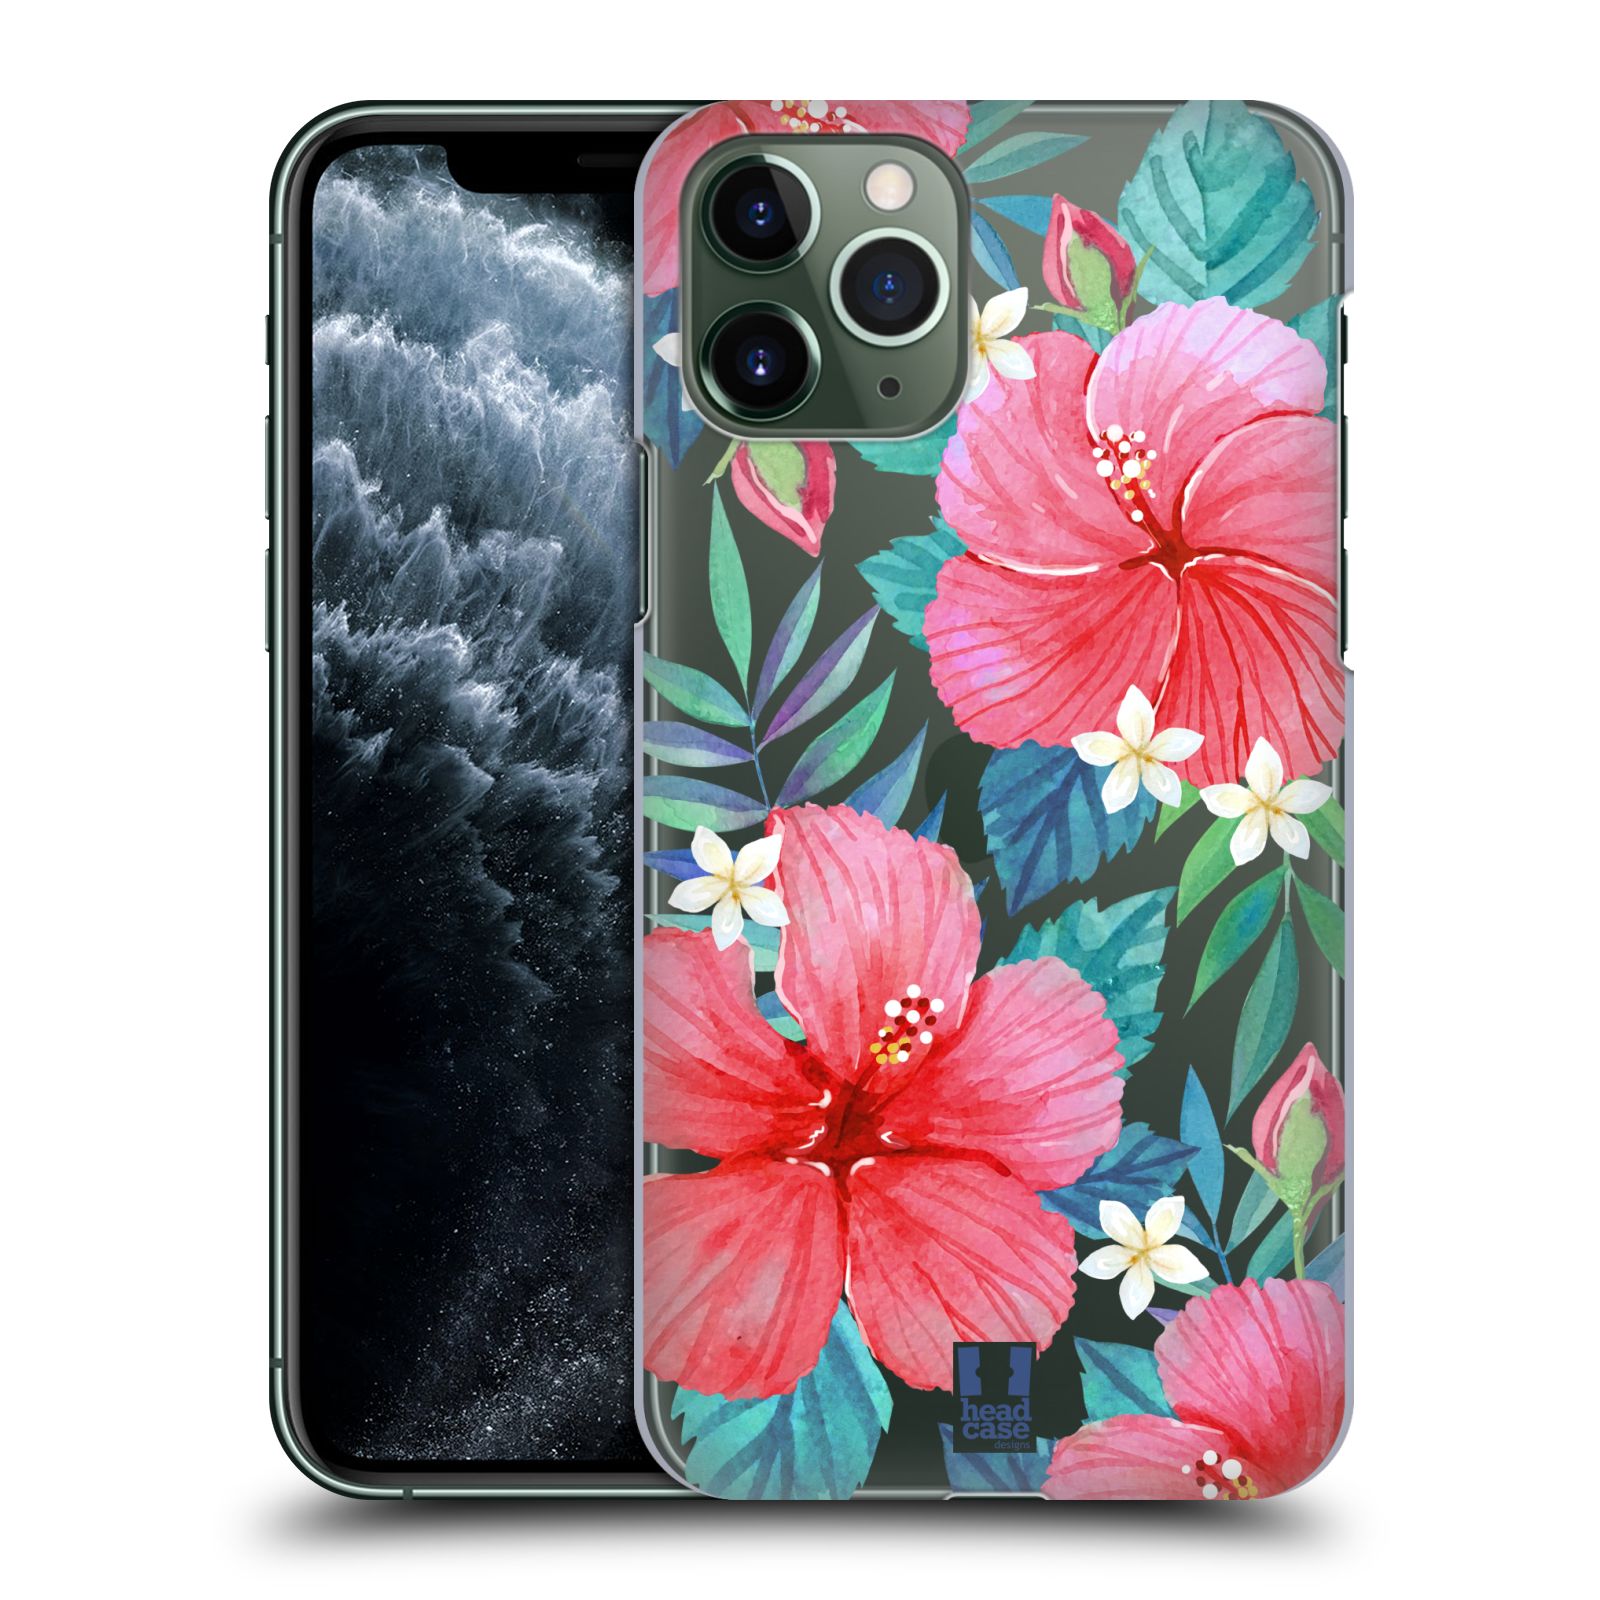 Pouzdro na mobil Apple Iphone 11 PRO - HEAD CASE - květinové vzory Ibišek čínská růže